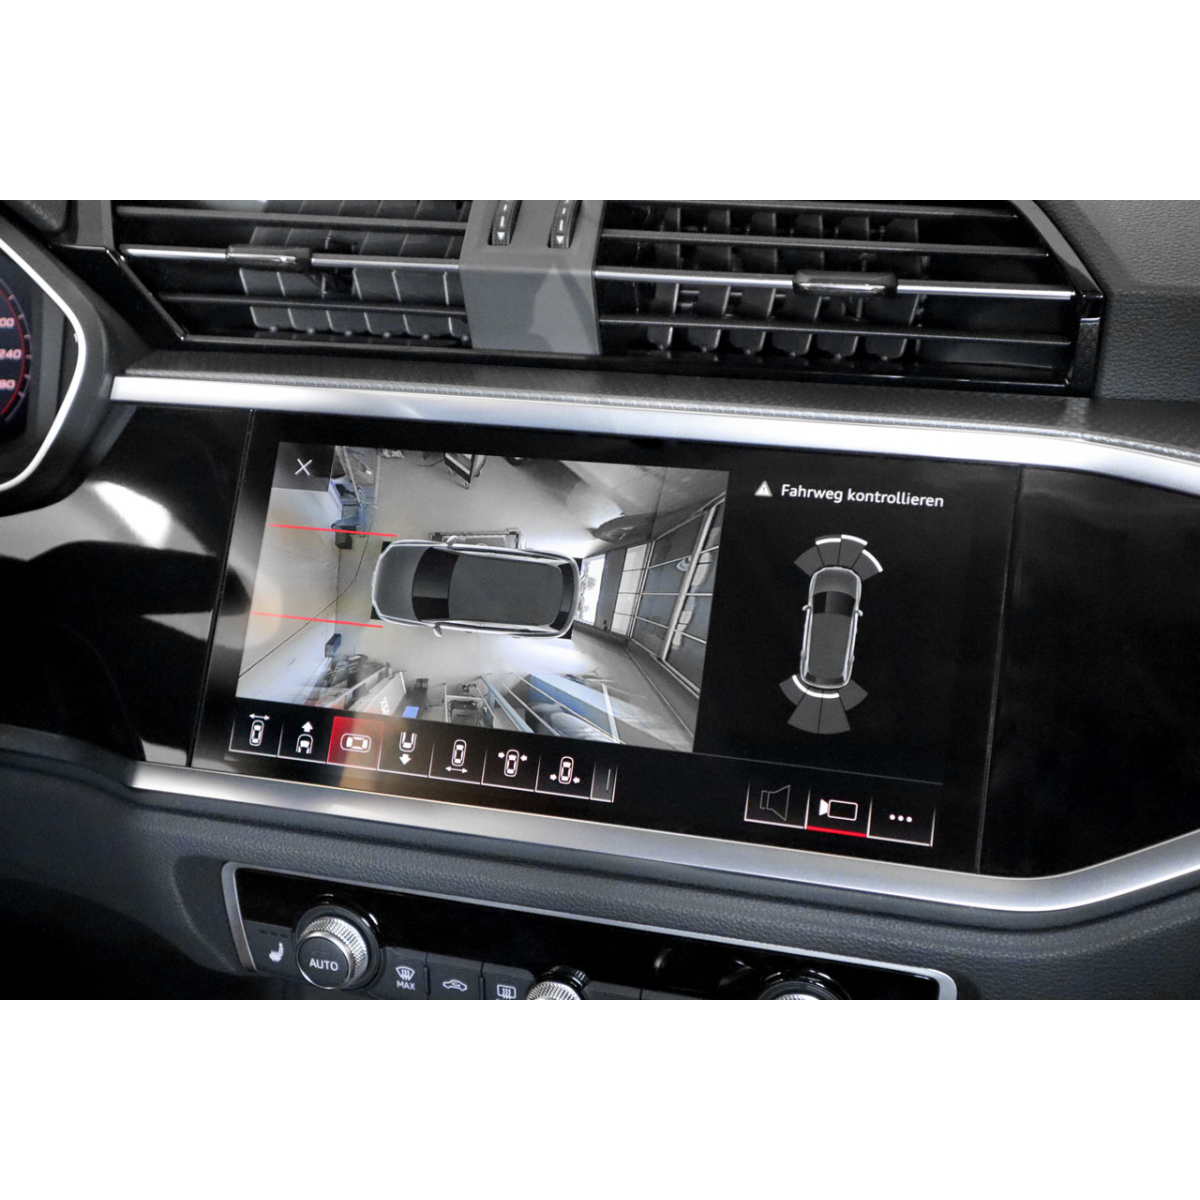 Surrounding camera (telecamere perimetrali) - Retrofit kit - Audi Q3 F3 -  Navistore